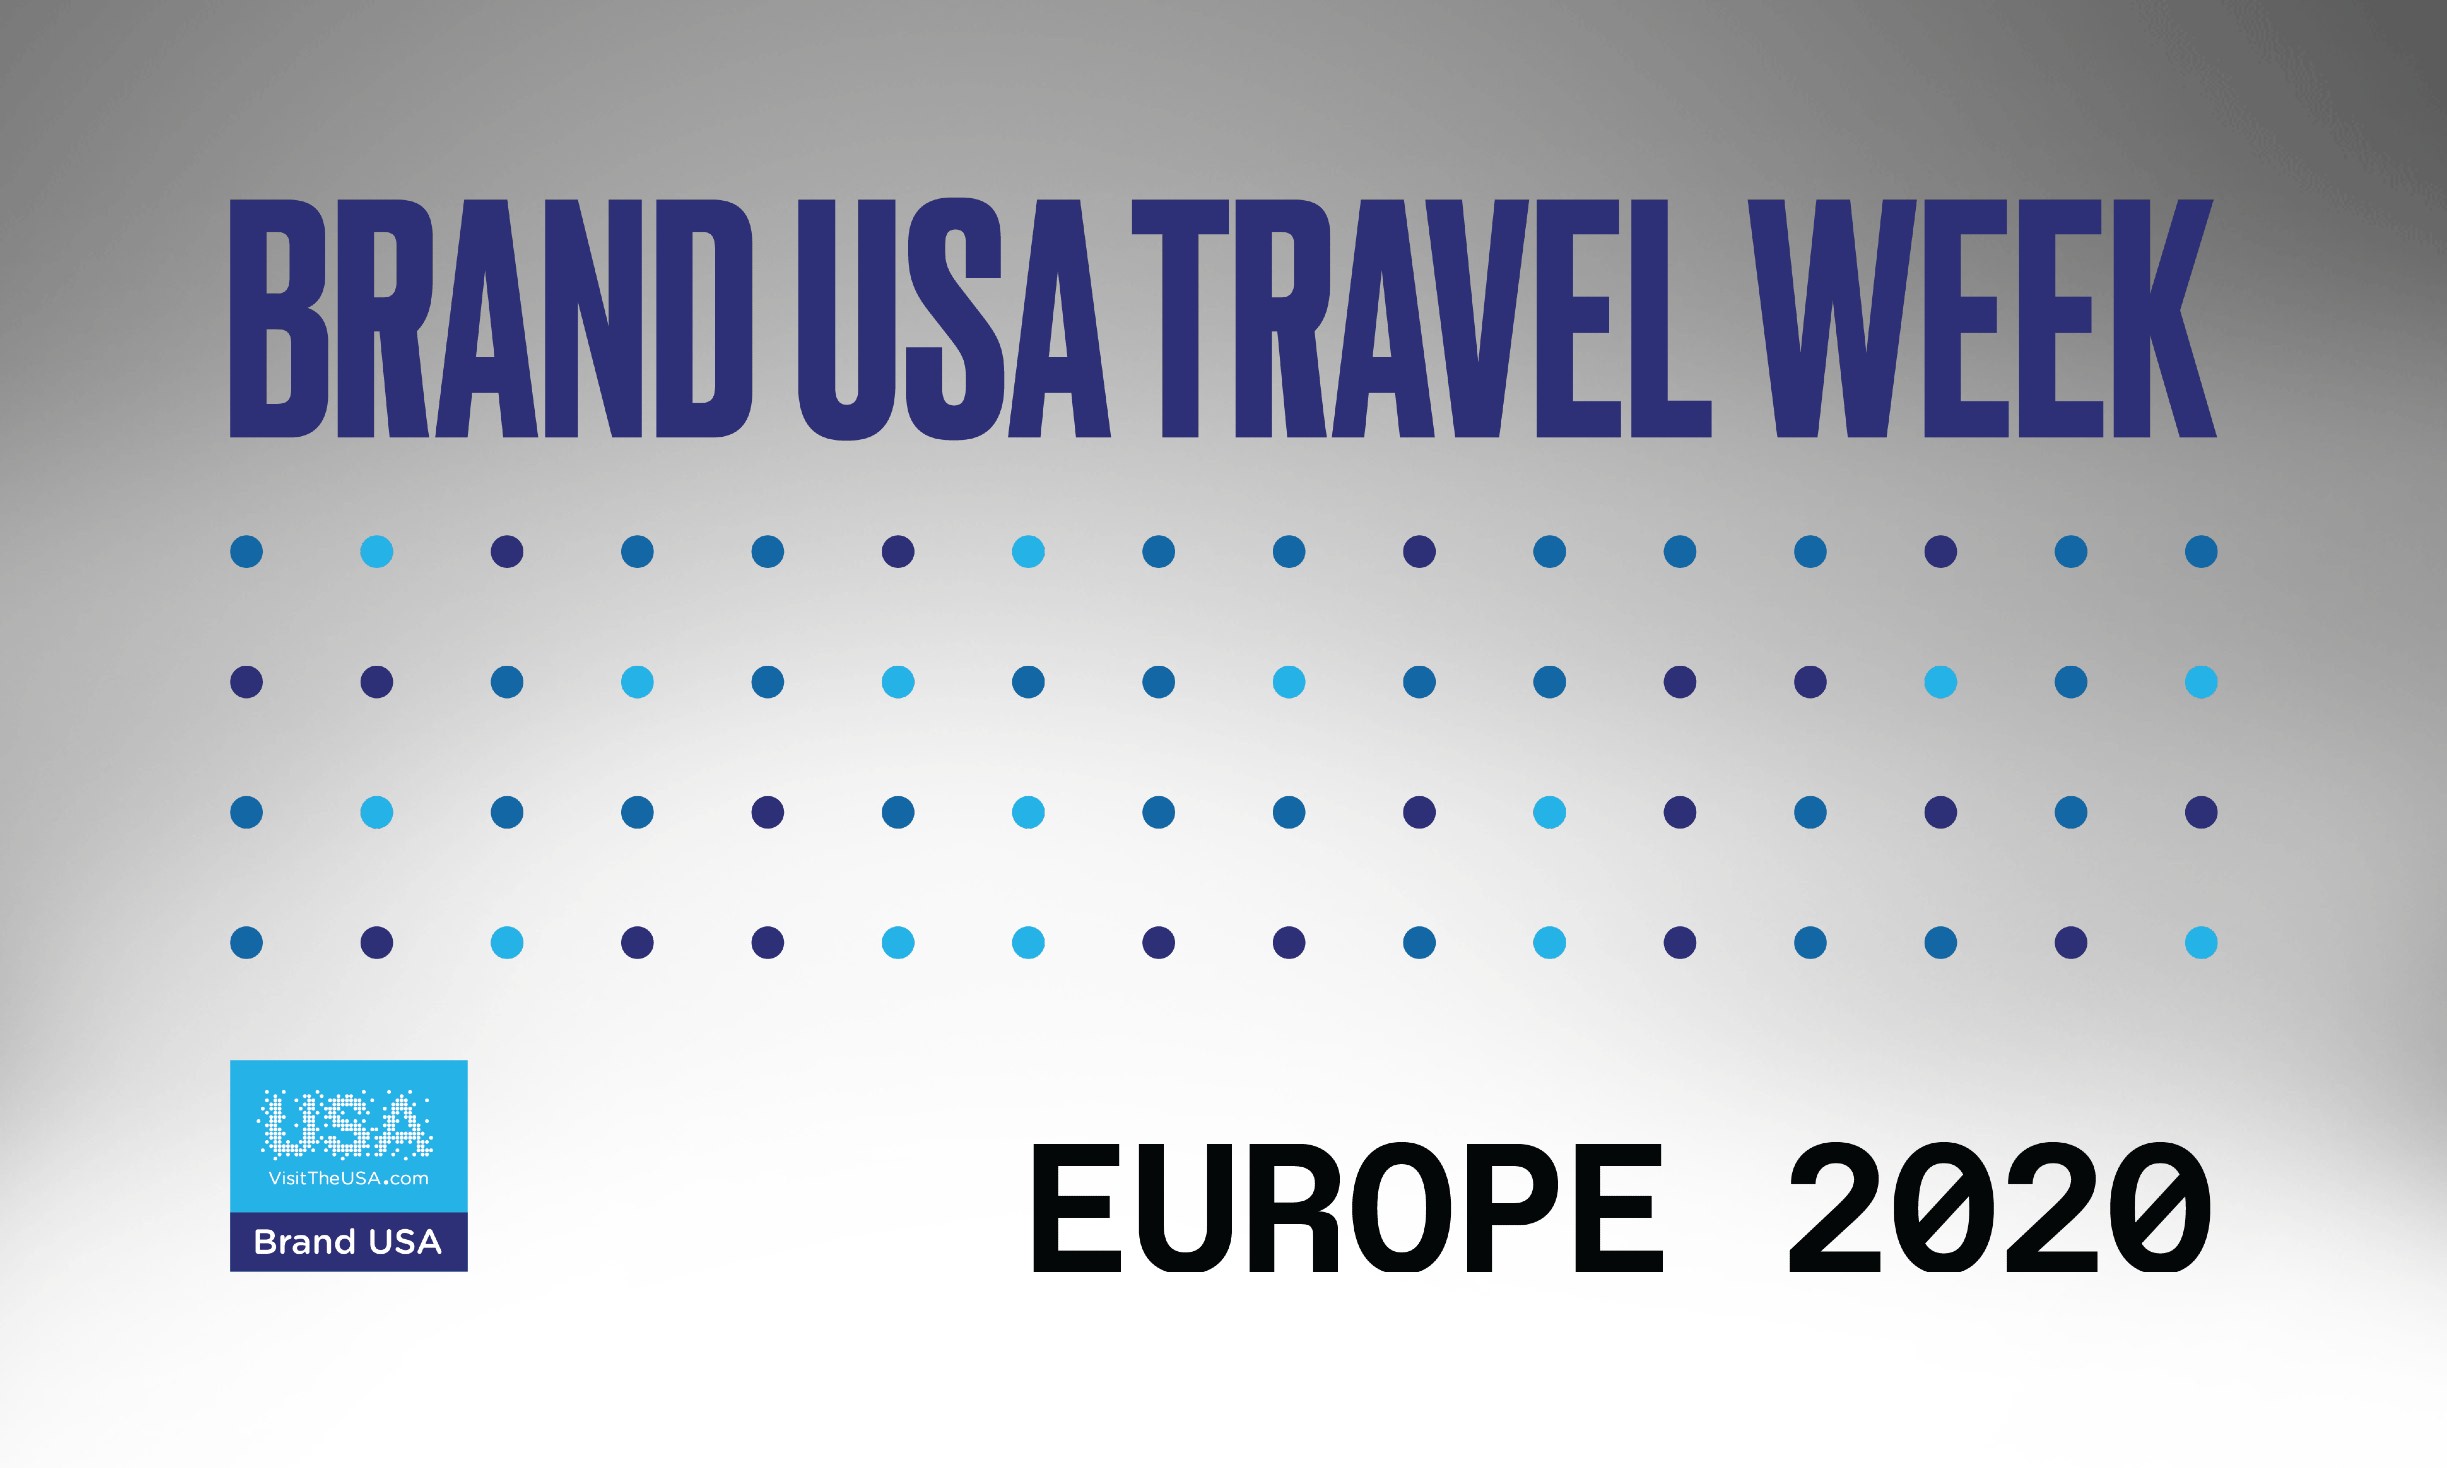 Brand USA Travel Week Europe 2020